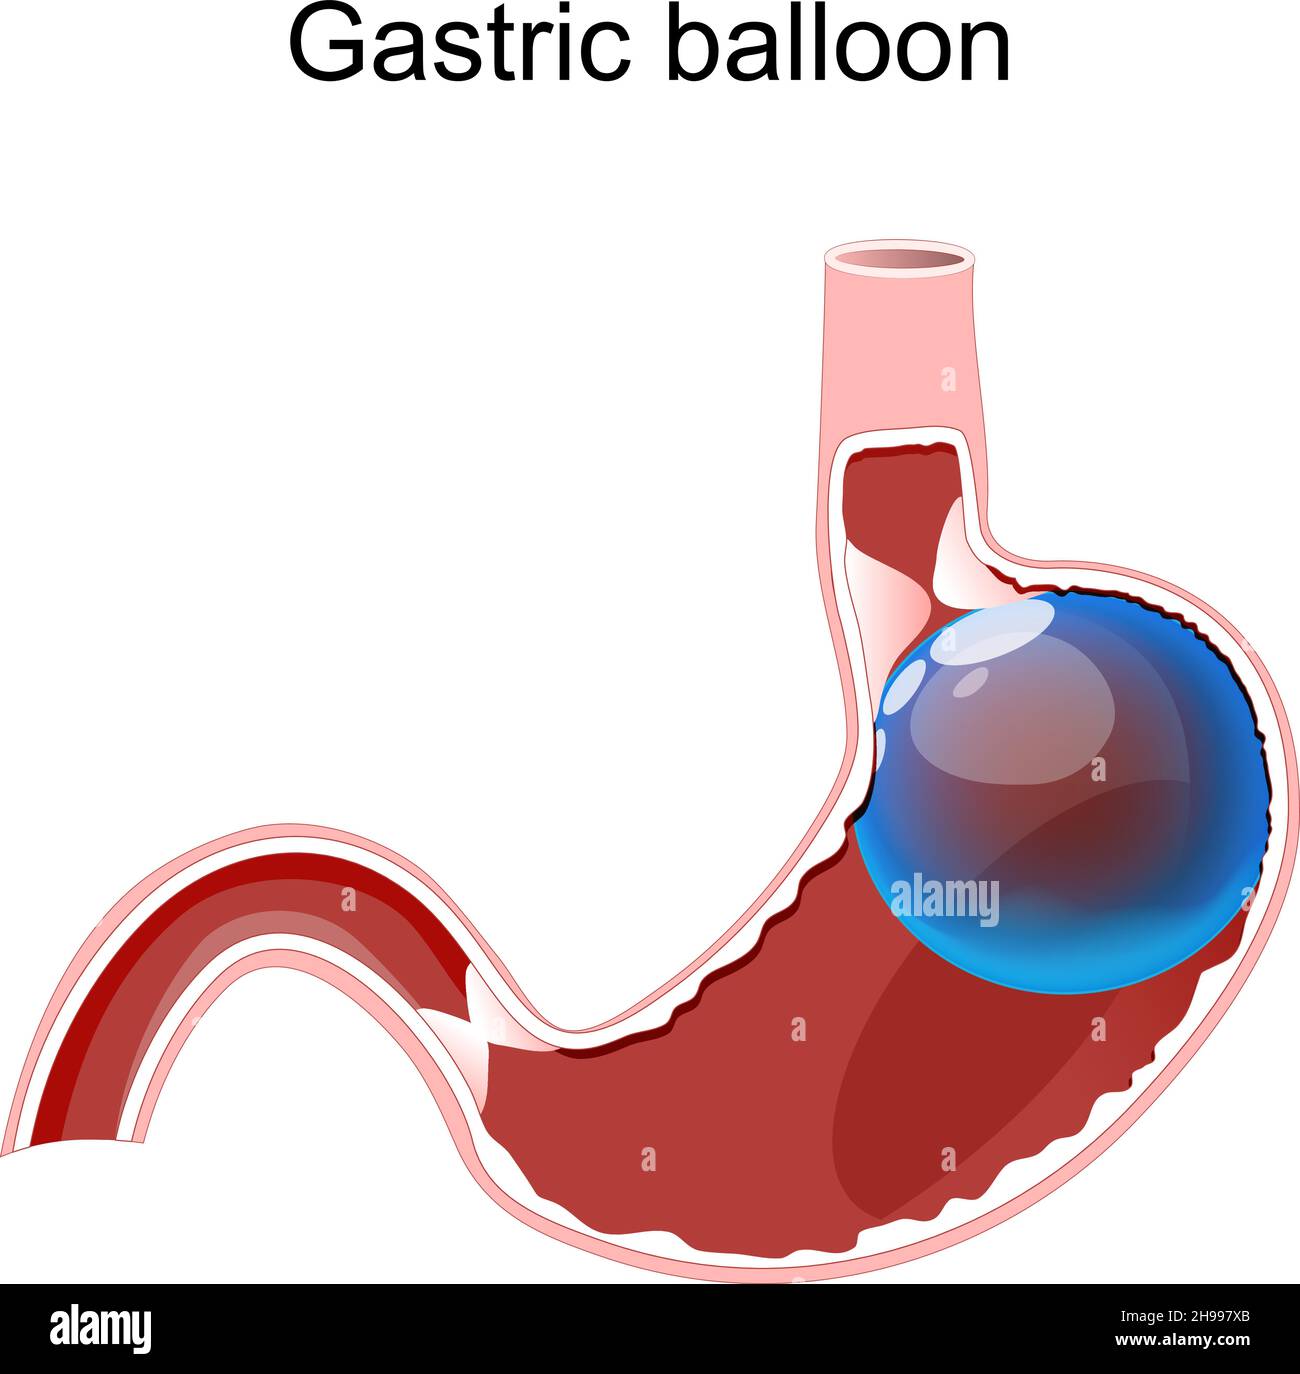 Ballon gastrique.Ballon intragastrique à l'intérieur d'un estomac. Perte de poids. Chirurgie intragastrique.Schéma vectoriel à usage médical Illustration de Vecteur